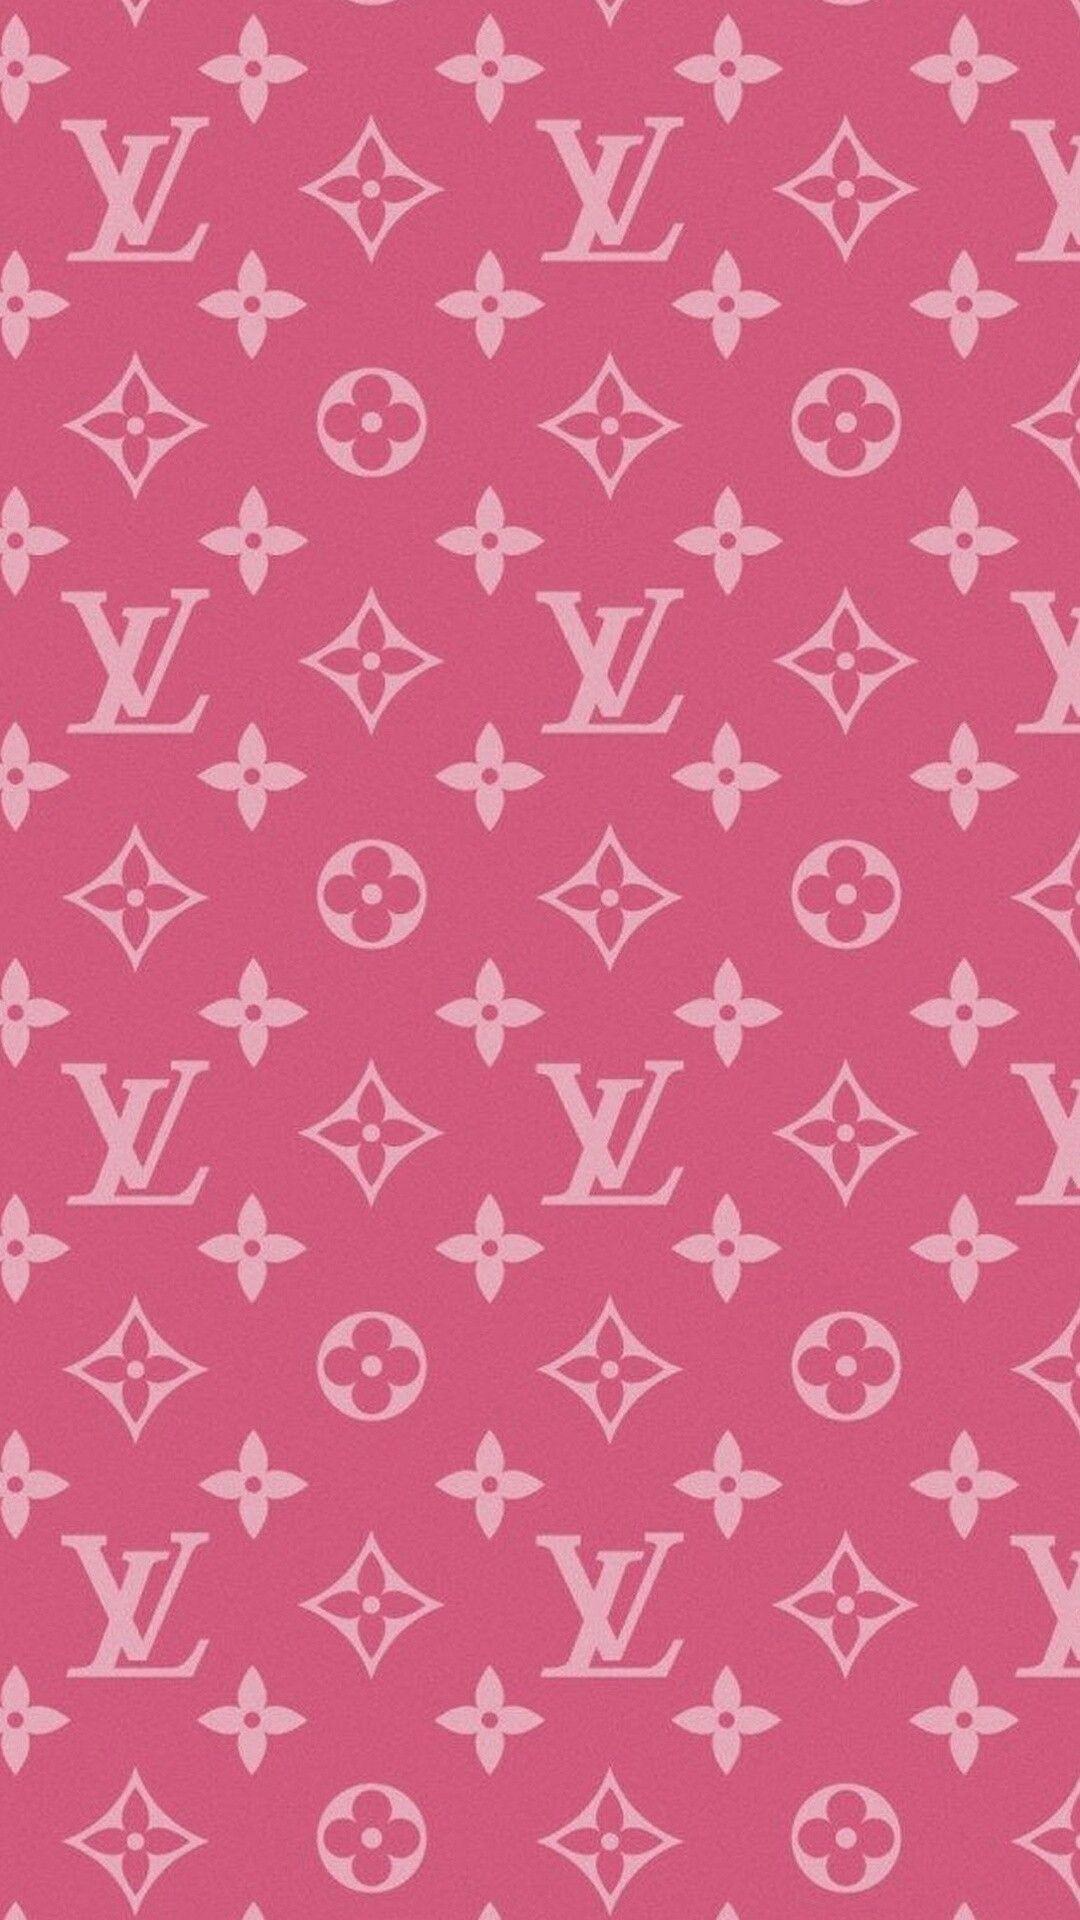 Louis Vuitton pink